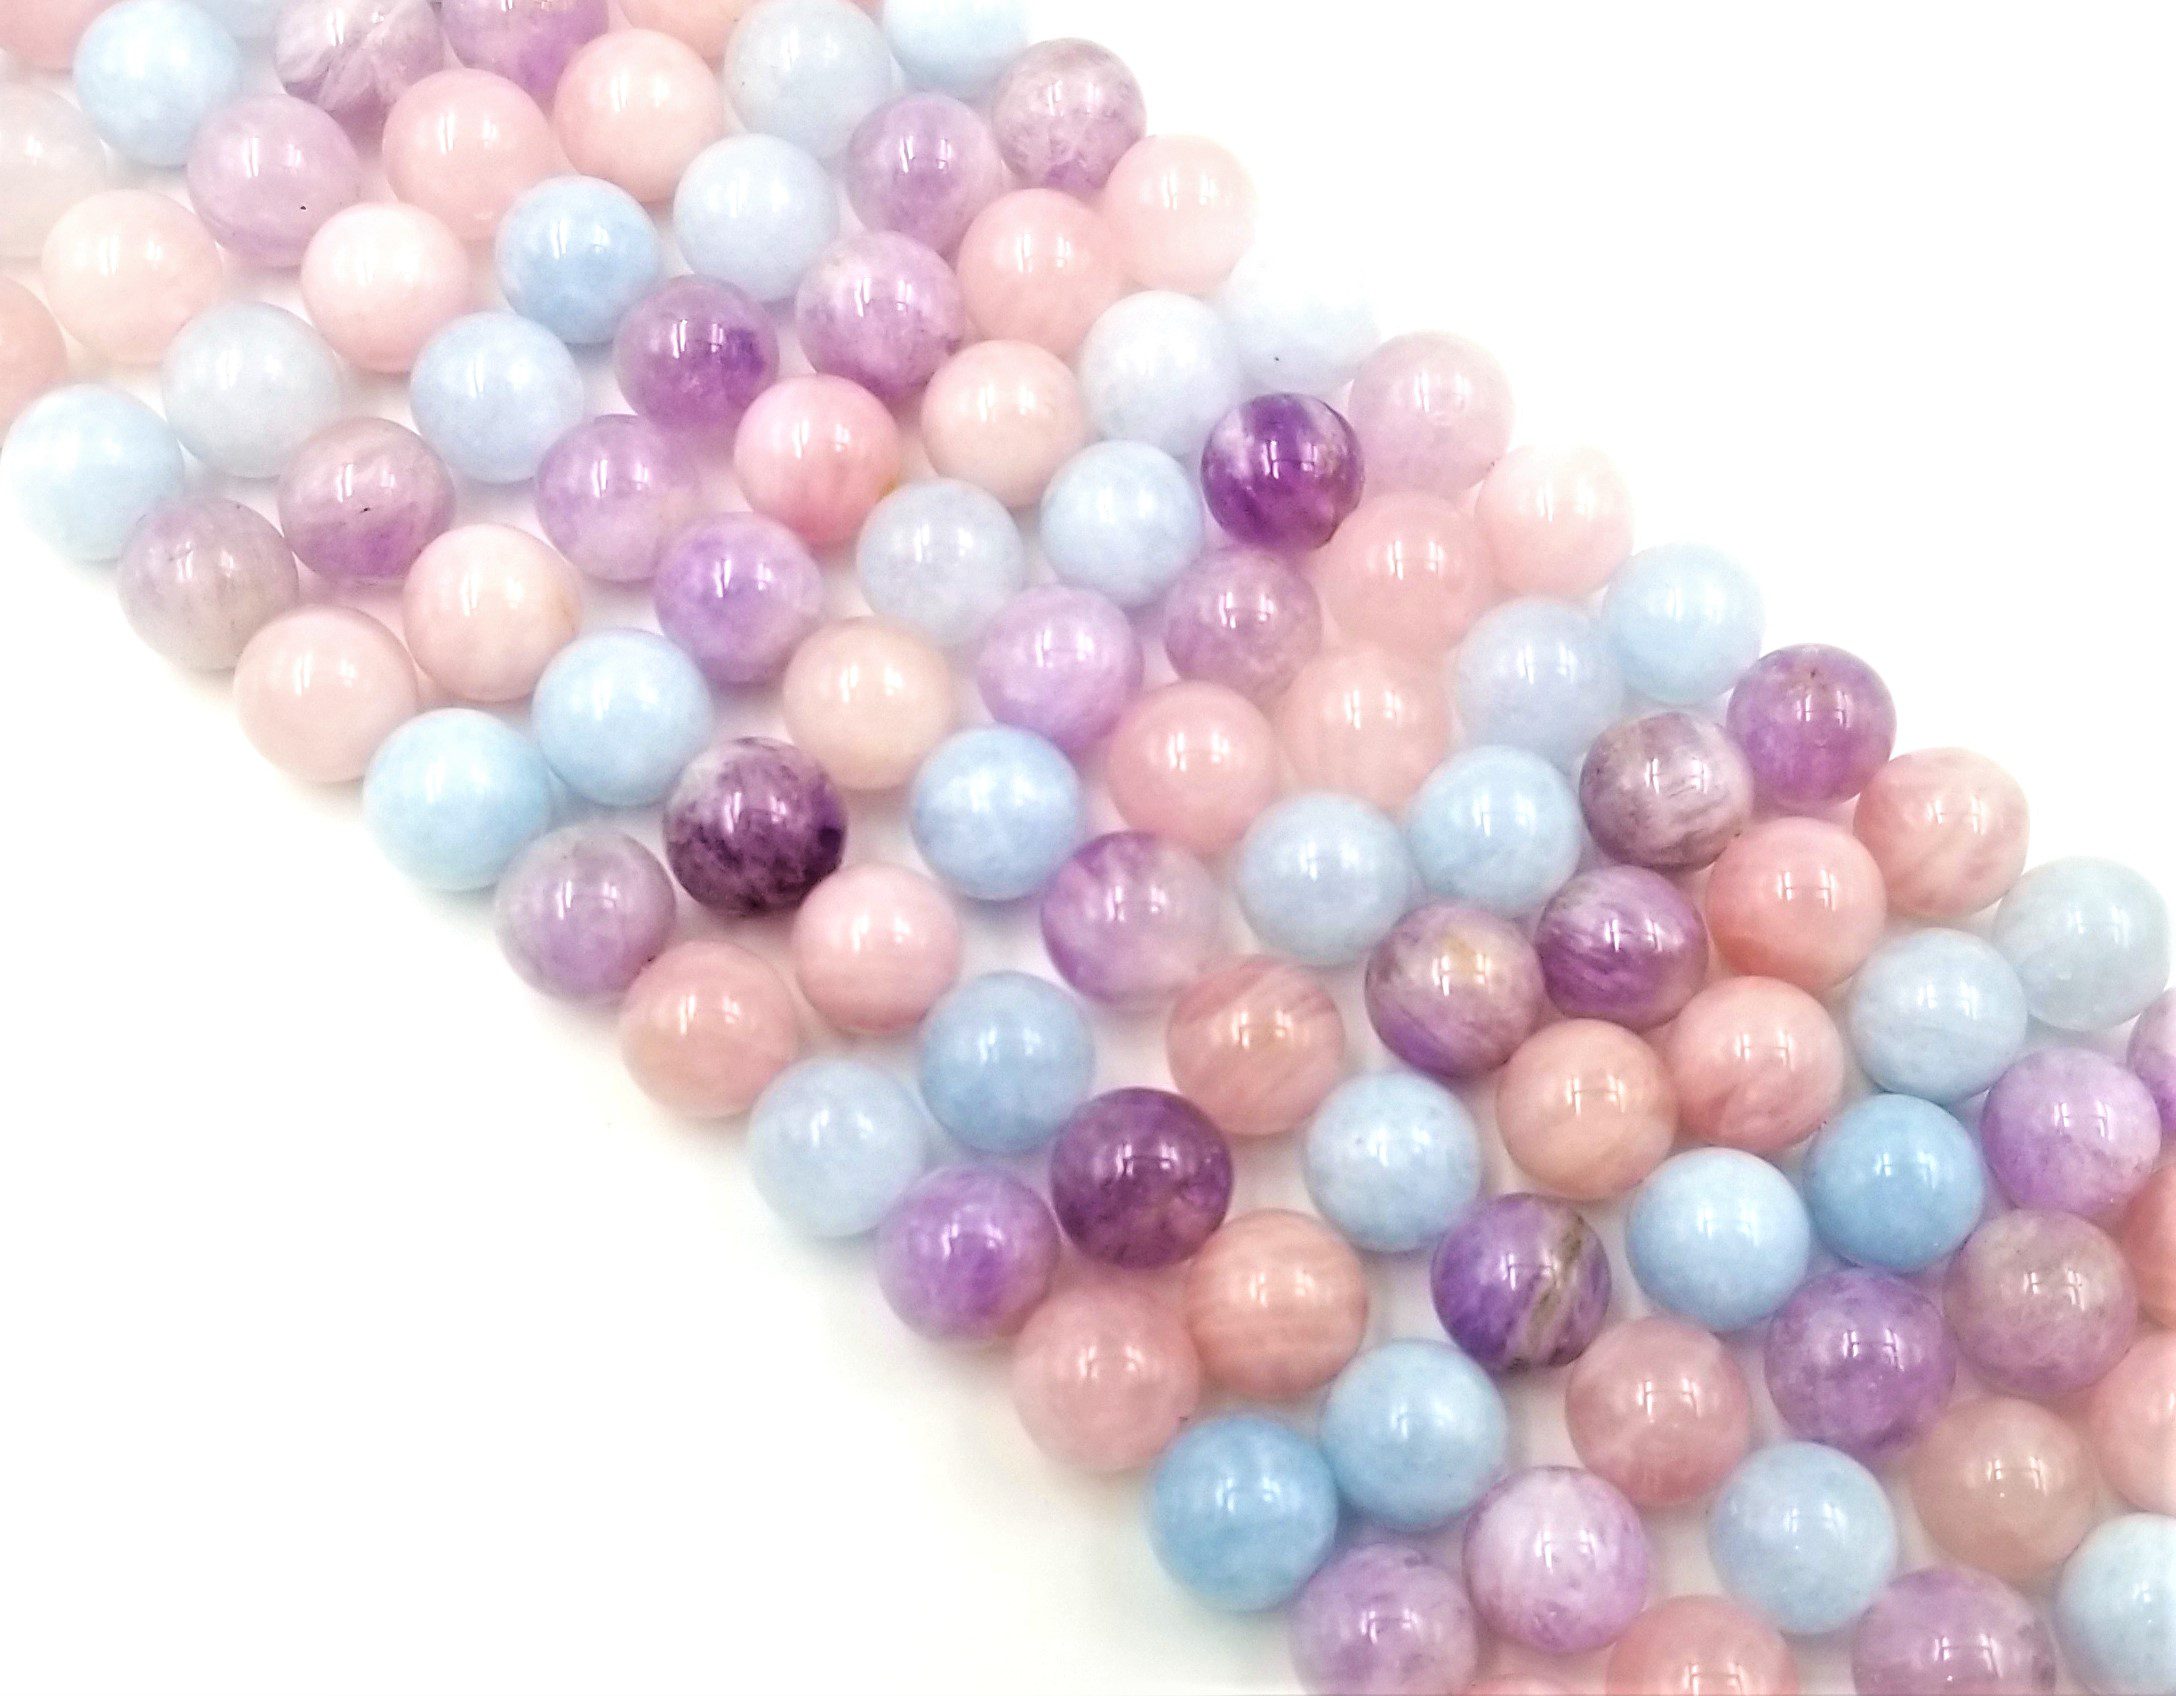 Natural Morganite Pink Beryl Genuine Round Gemstone Beads For Jewelry Making 15" 